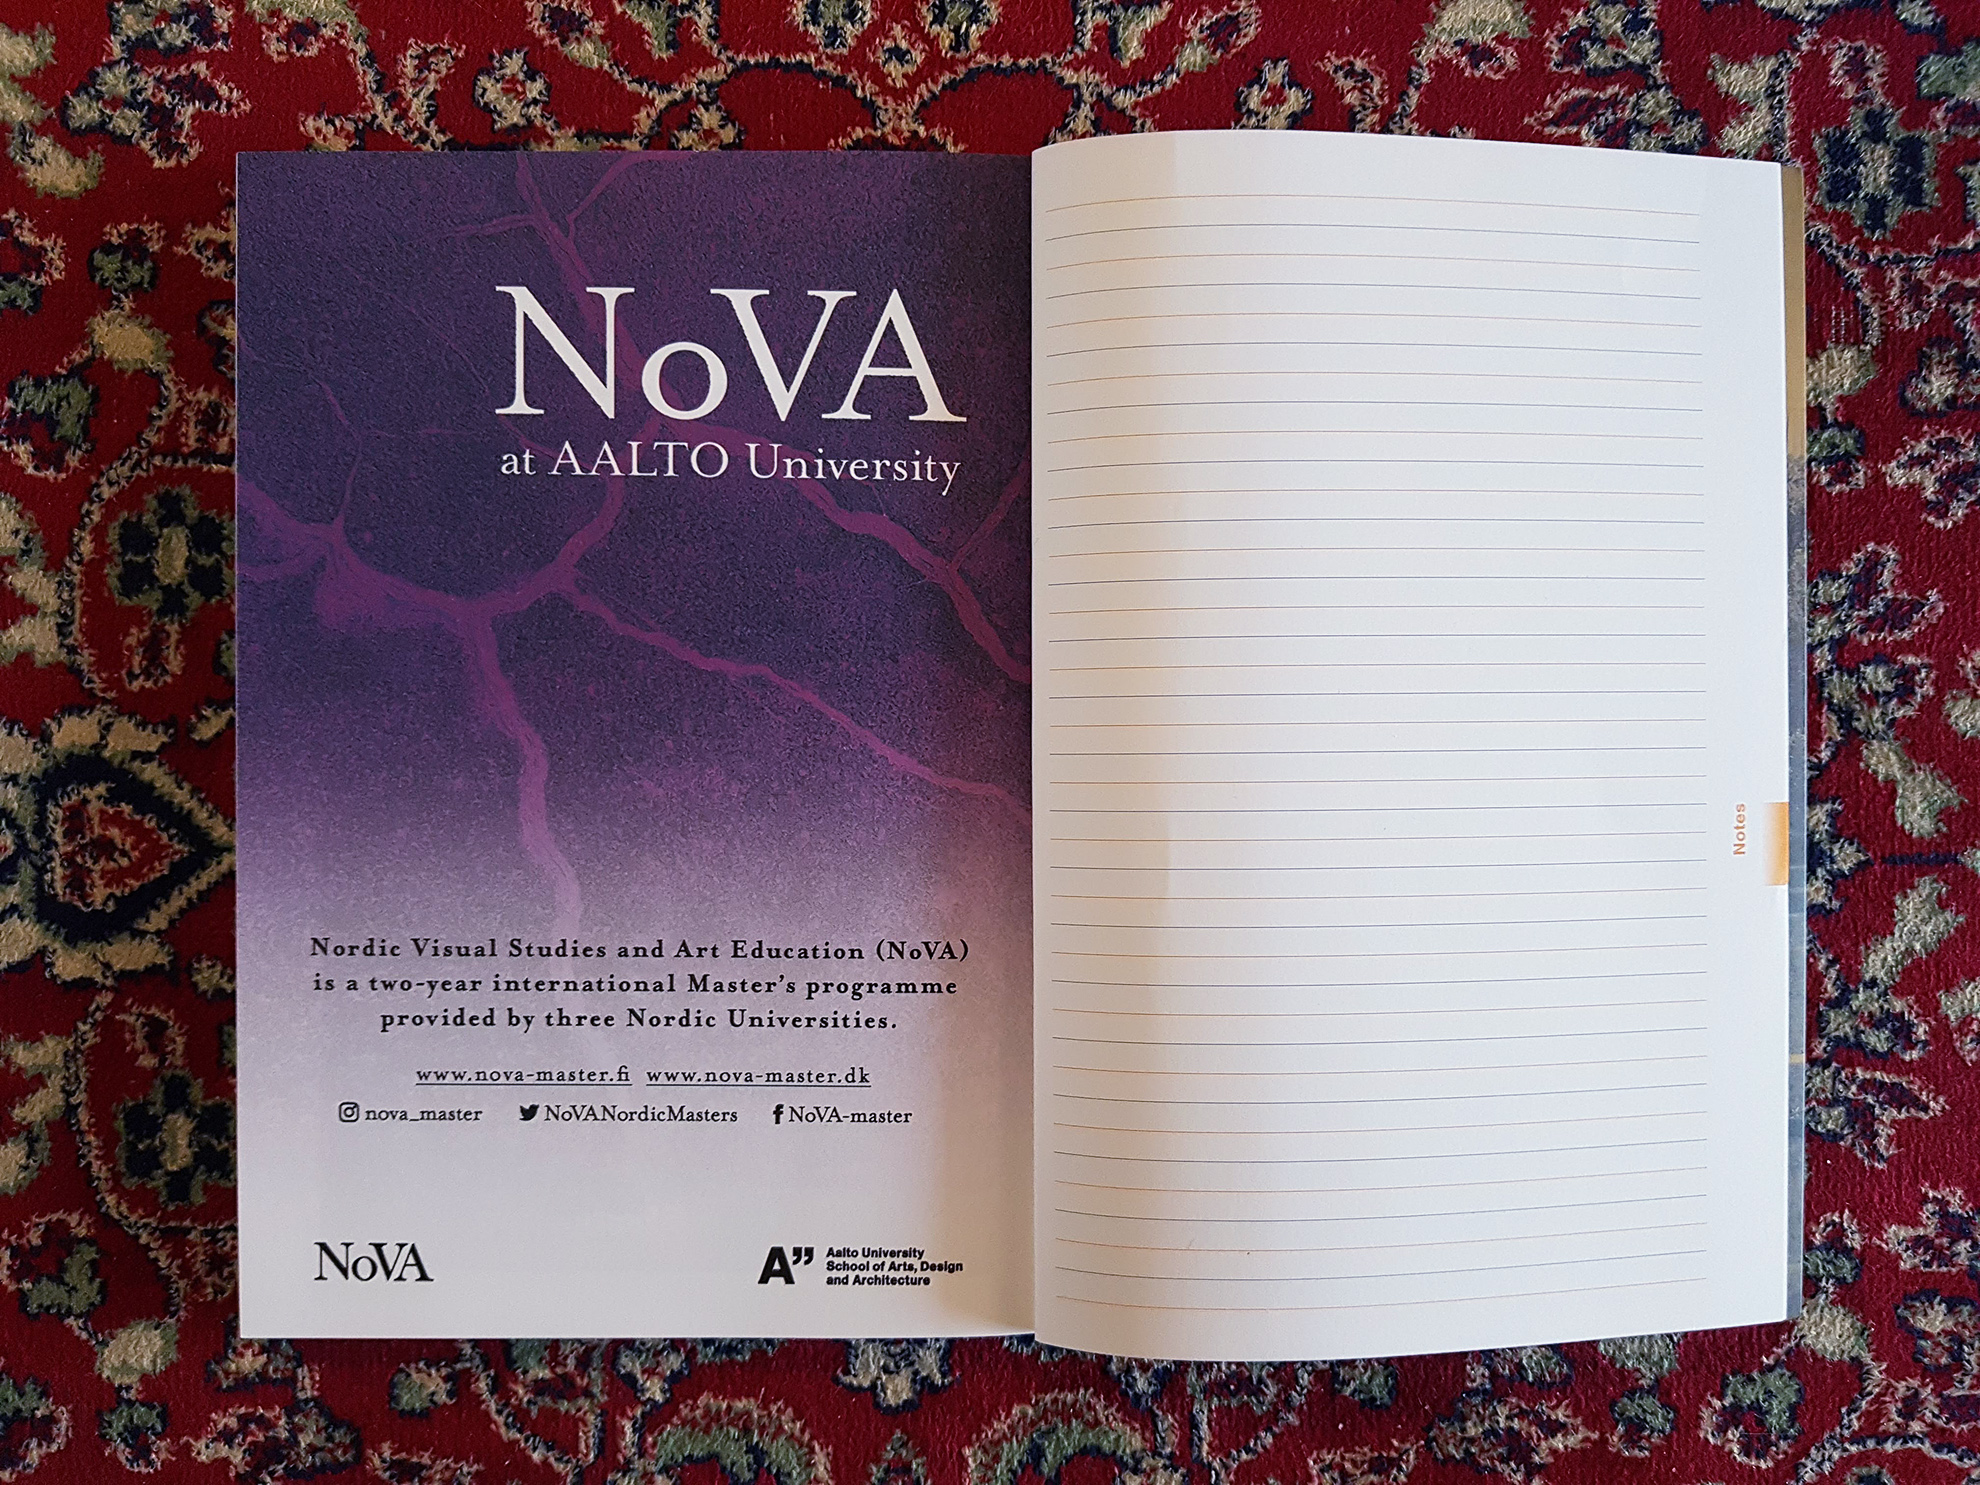 NoVA Programme Ad (InSEA Congress Catalog), 2018